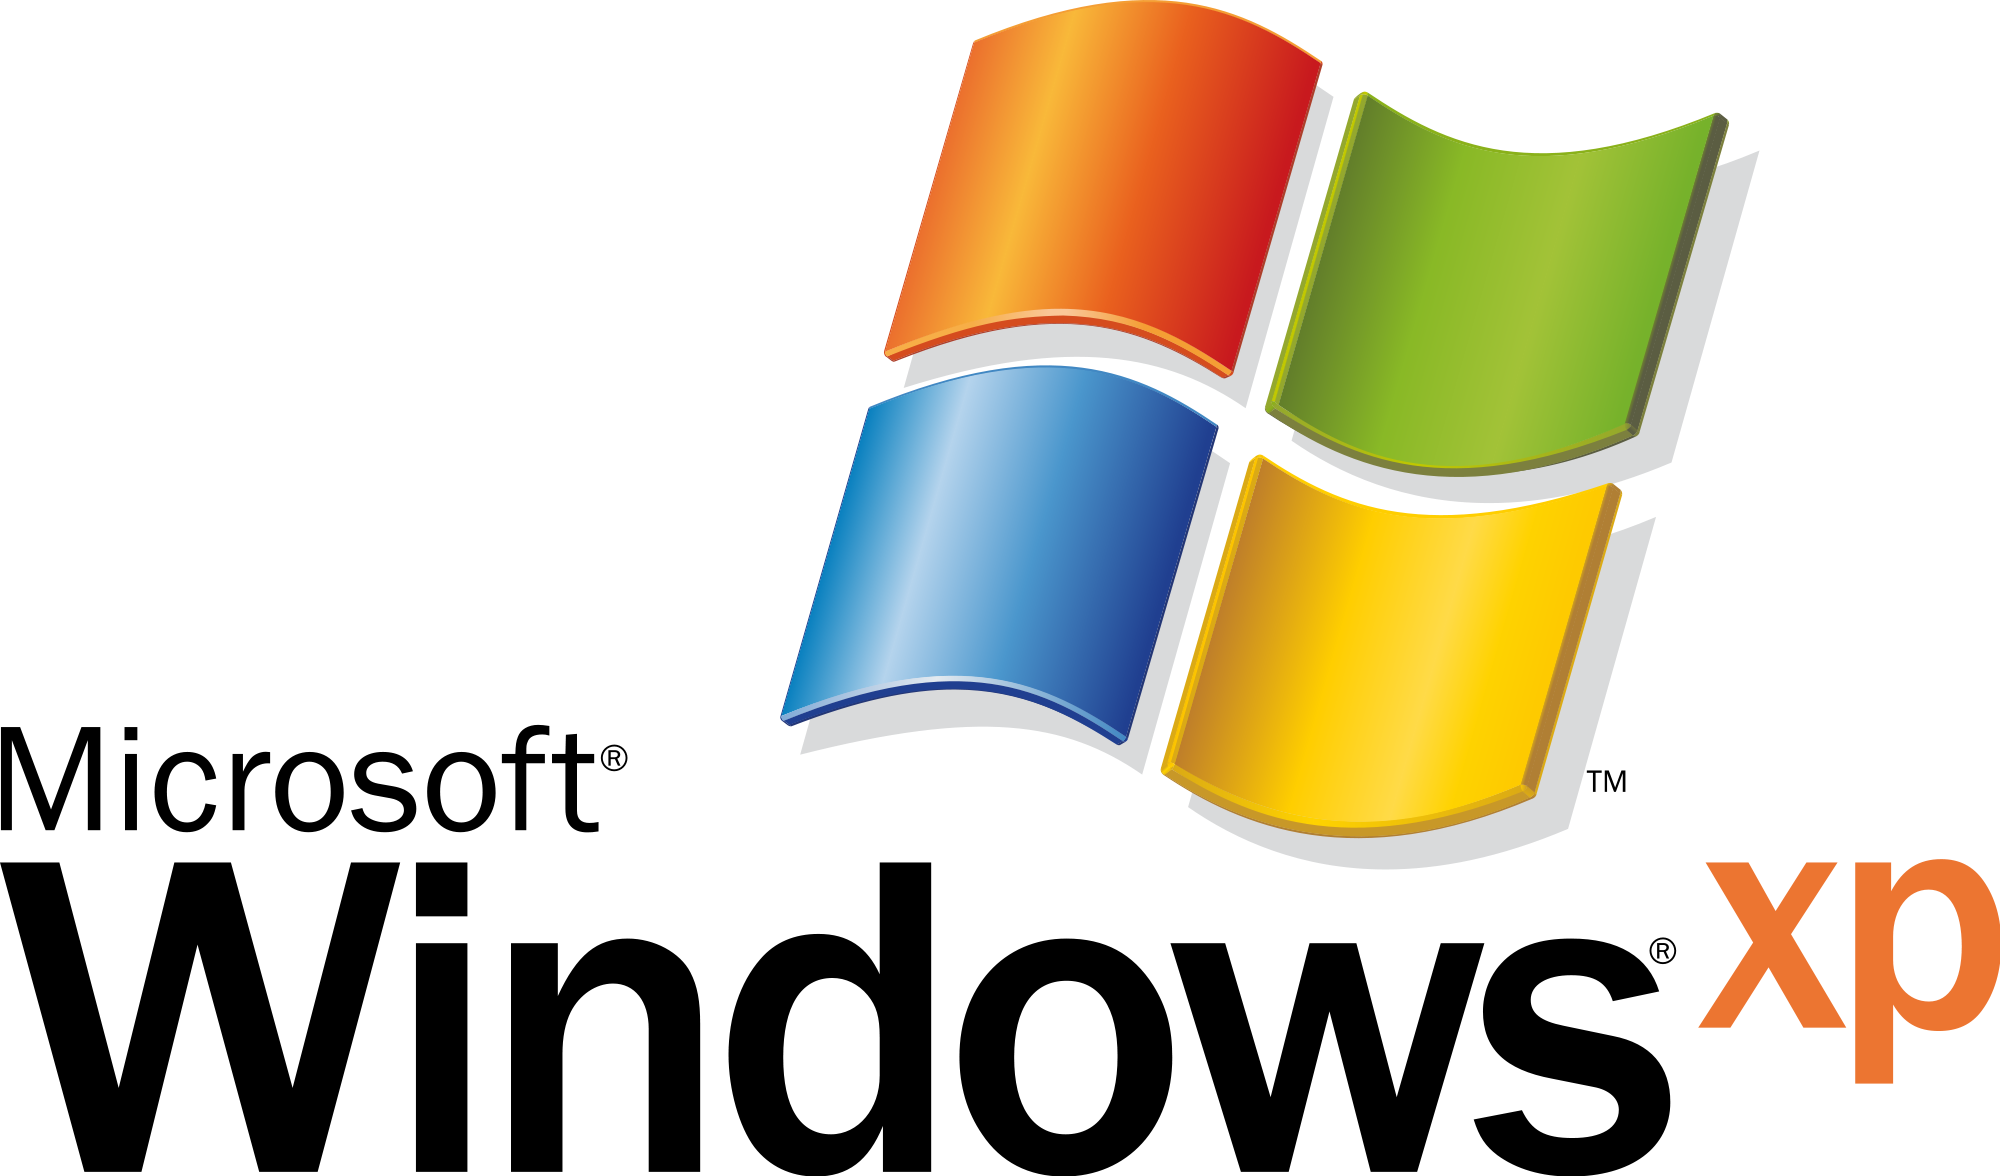 Windows XP Logo PNG là phiên bản logo được lưu trữ dưới định dạng PNG, giúp bạn có thể sử dụng và tùy chỉnh một cách dễ dàng. Hãy khám phá hình ảnh liên quan để tìm hiểu và tận hưởng sự tiện lợi và độ linh hoạt trong việc sử dụng phiên bản này.